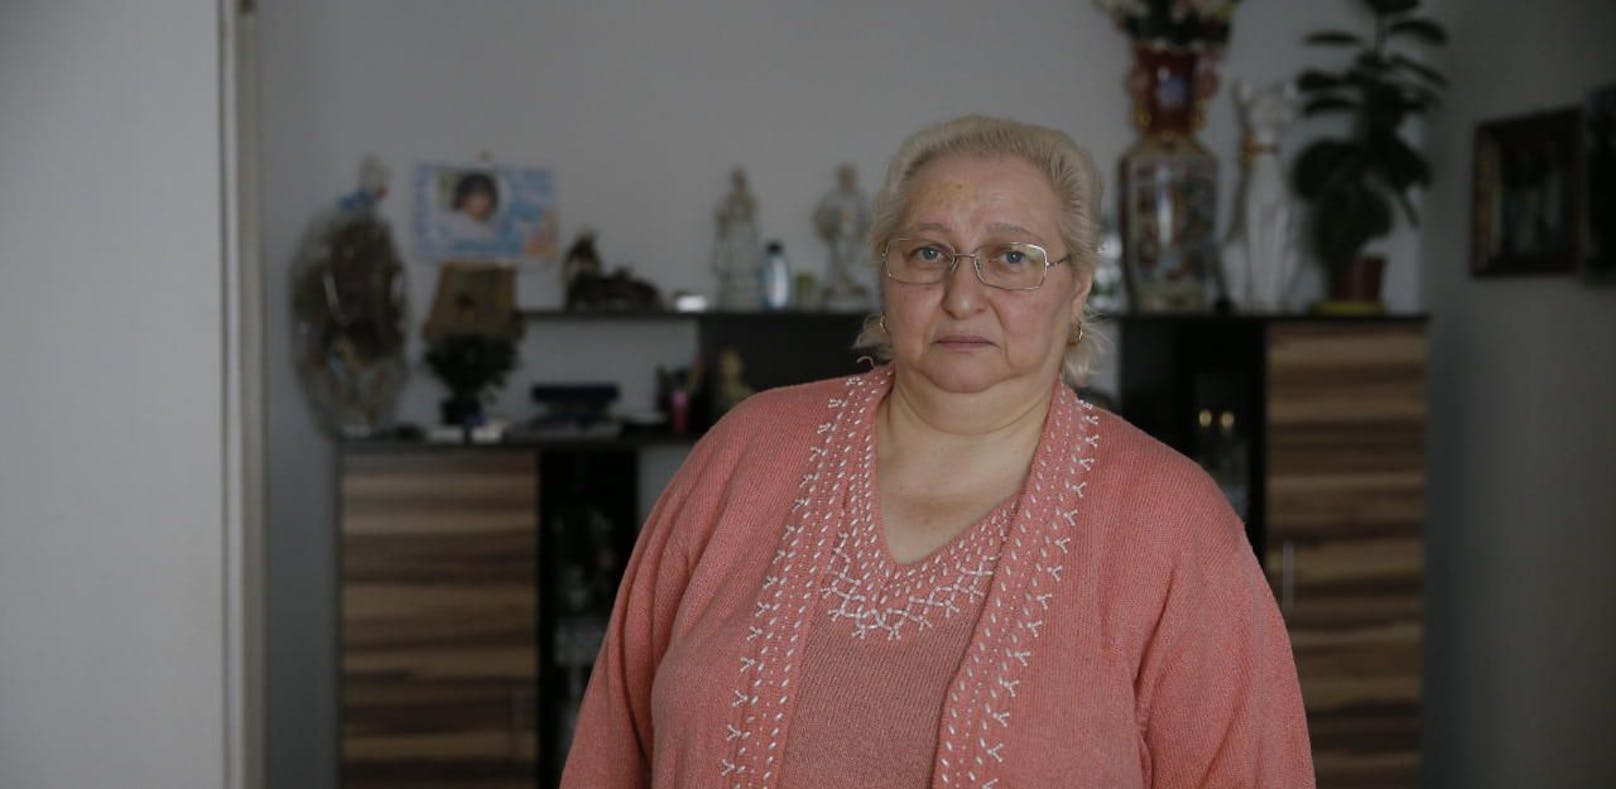 Zlata M. (59) kämpft für ihre Tochter Sissy, die mehrfach missbraucht wurde.